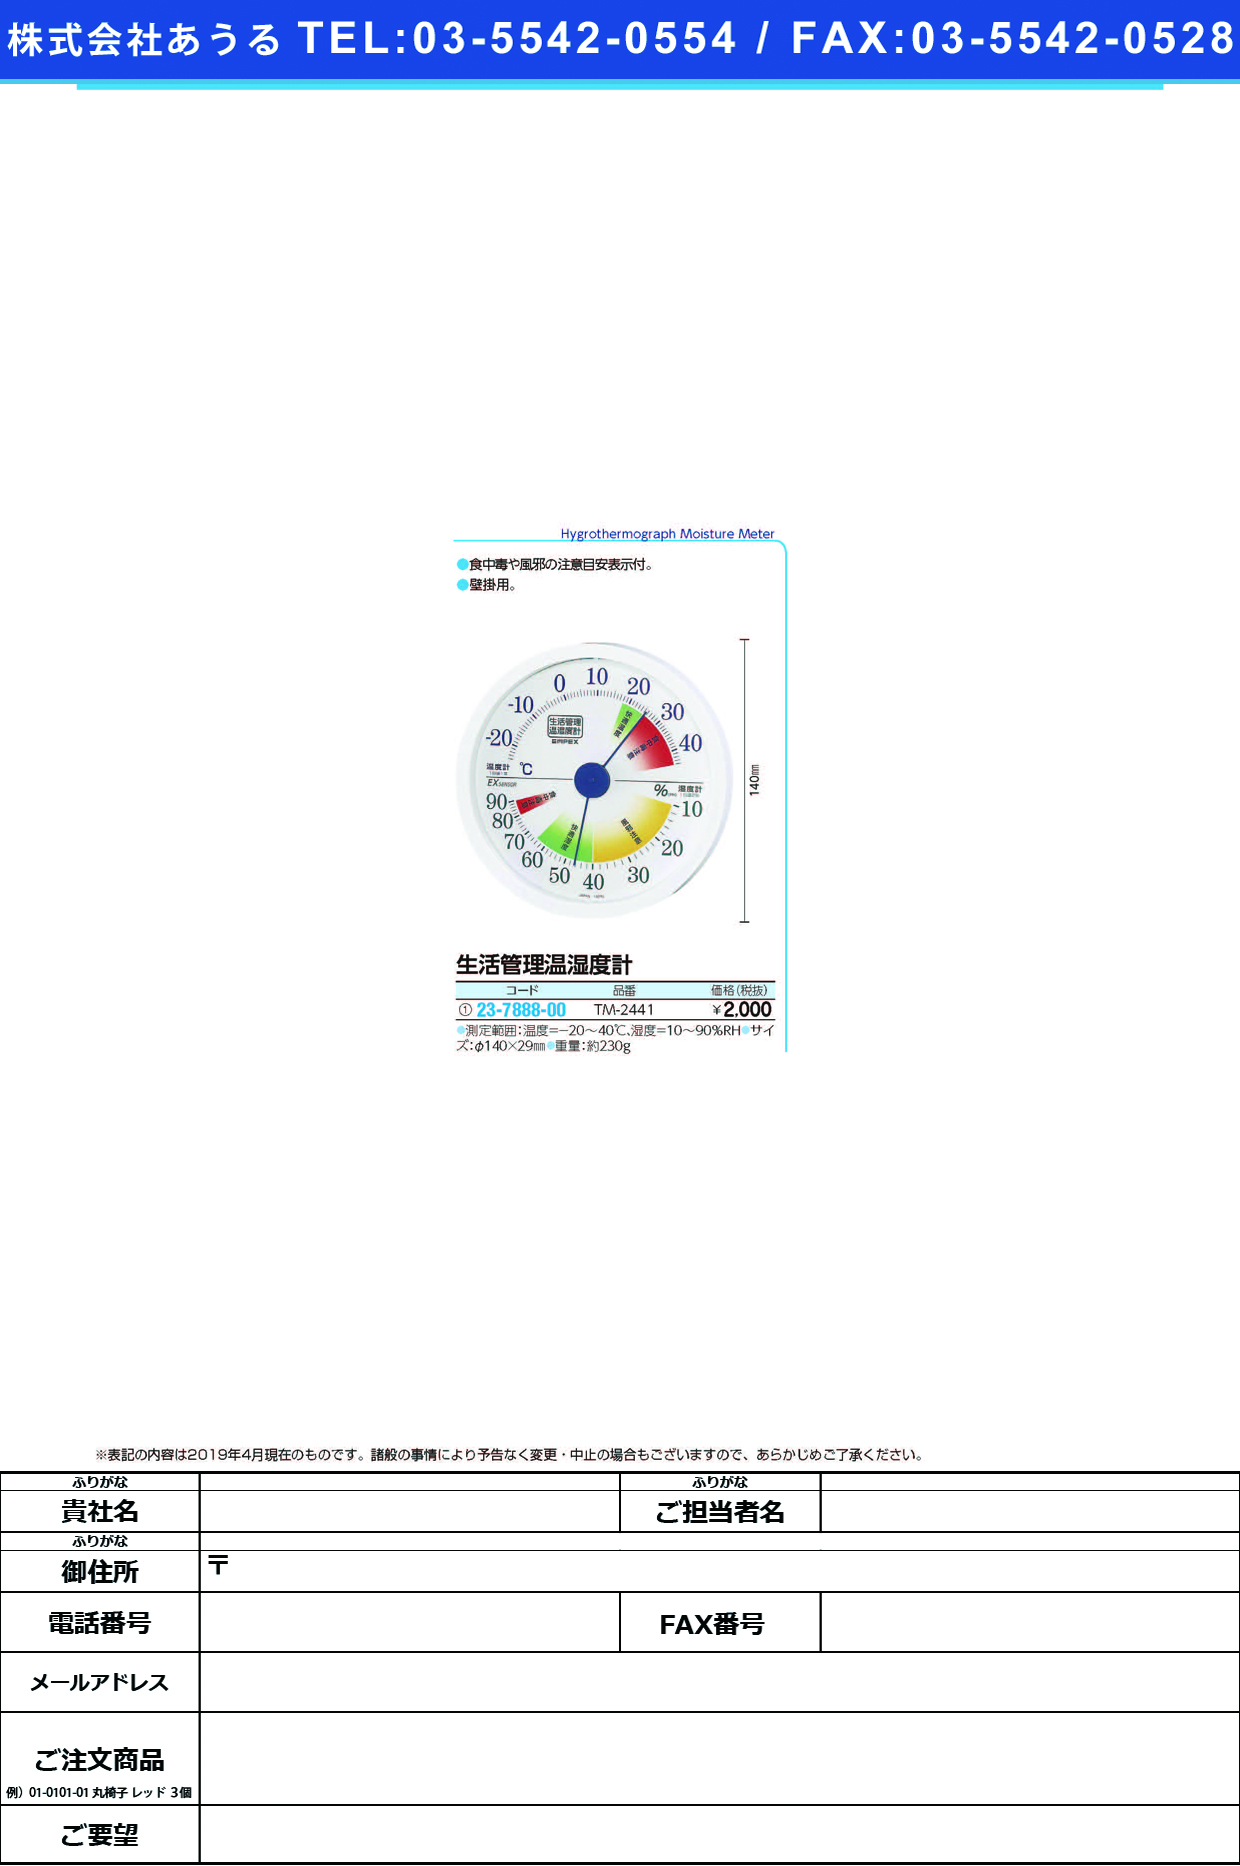 (23-7888-00)エンペックス生活管理温湿度計 TM-2441 ｾｲｶﾂｶﾝﾘｵﾝｼﾂﾄﾞｹｲ【1個単位】【2019年カタログ商品】